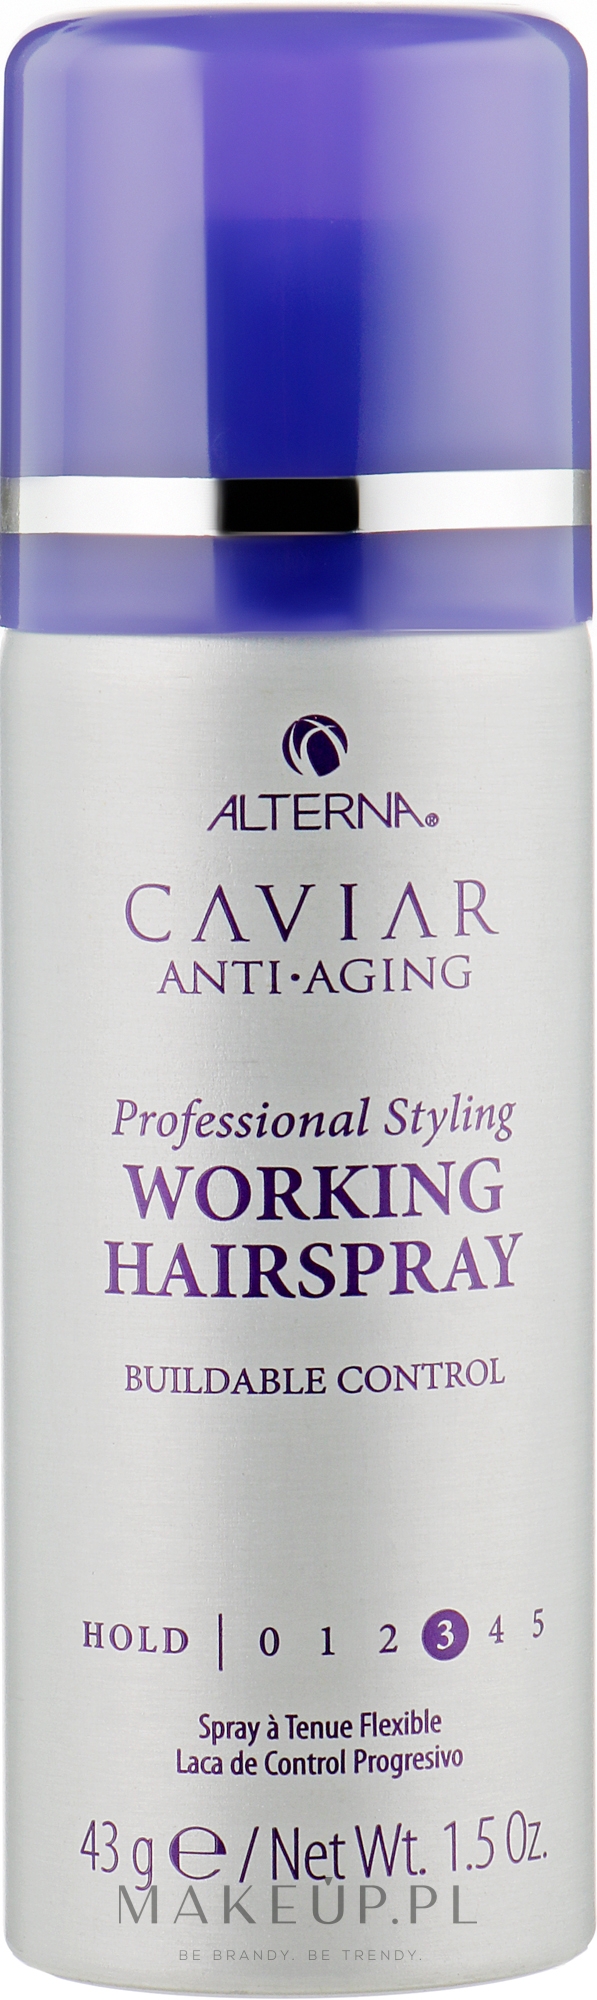 caviar anti aging lakier do włosów